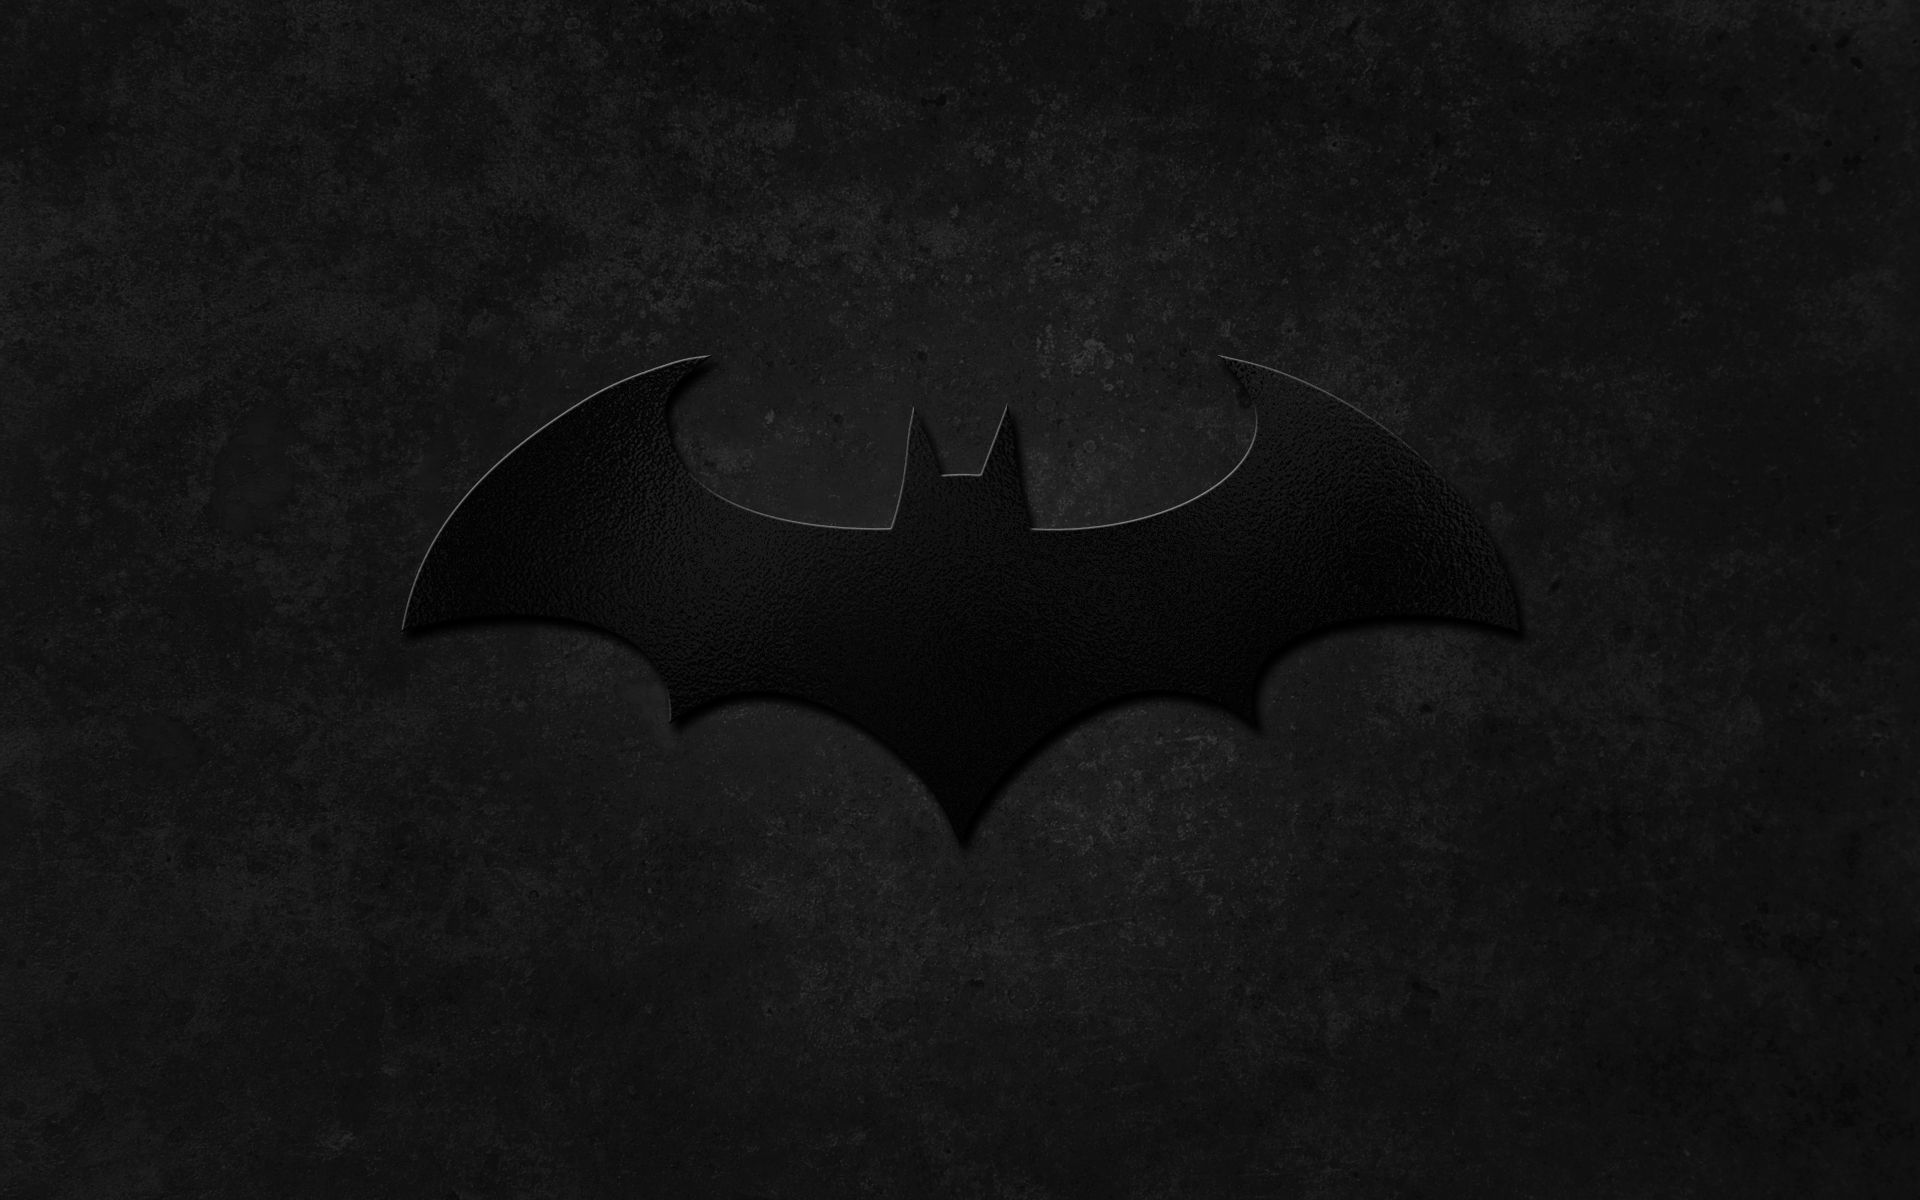 Batman Logo Wallpaper by PK Enterprises on DeviantArt